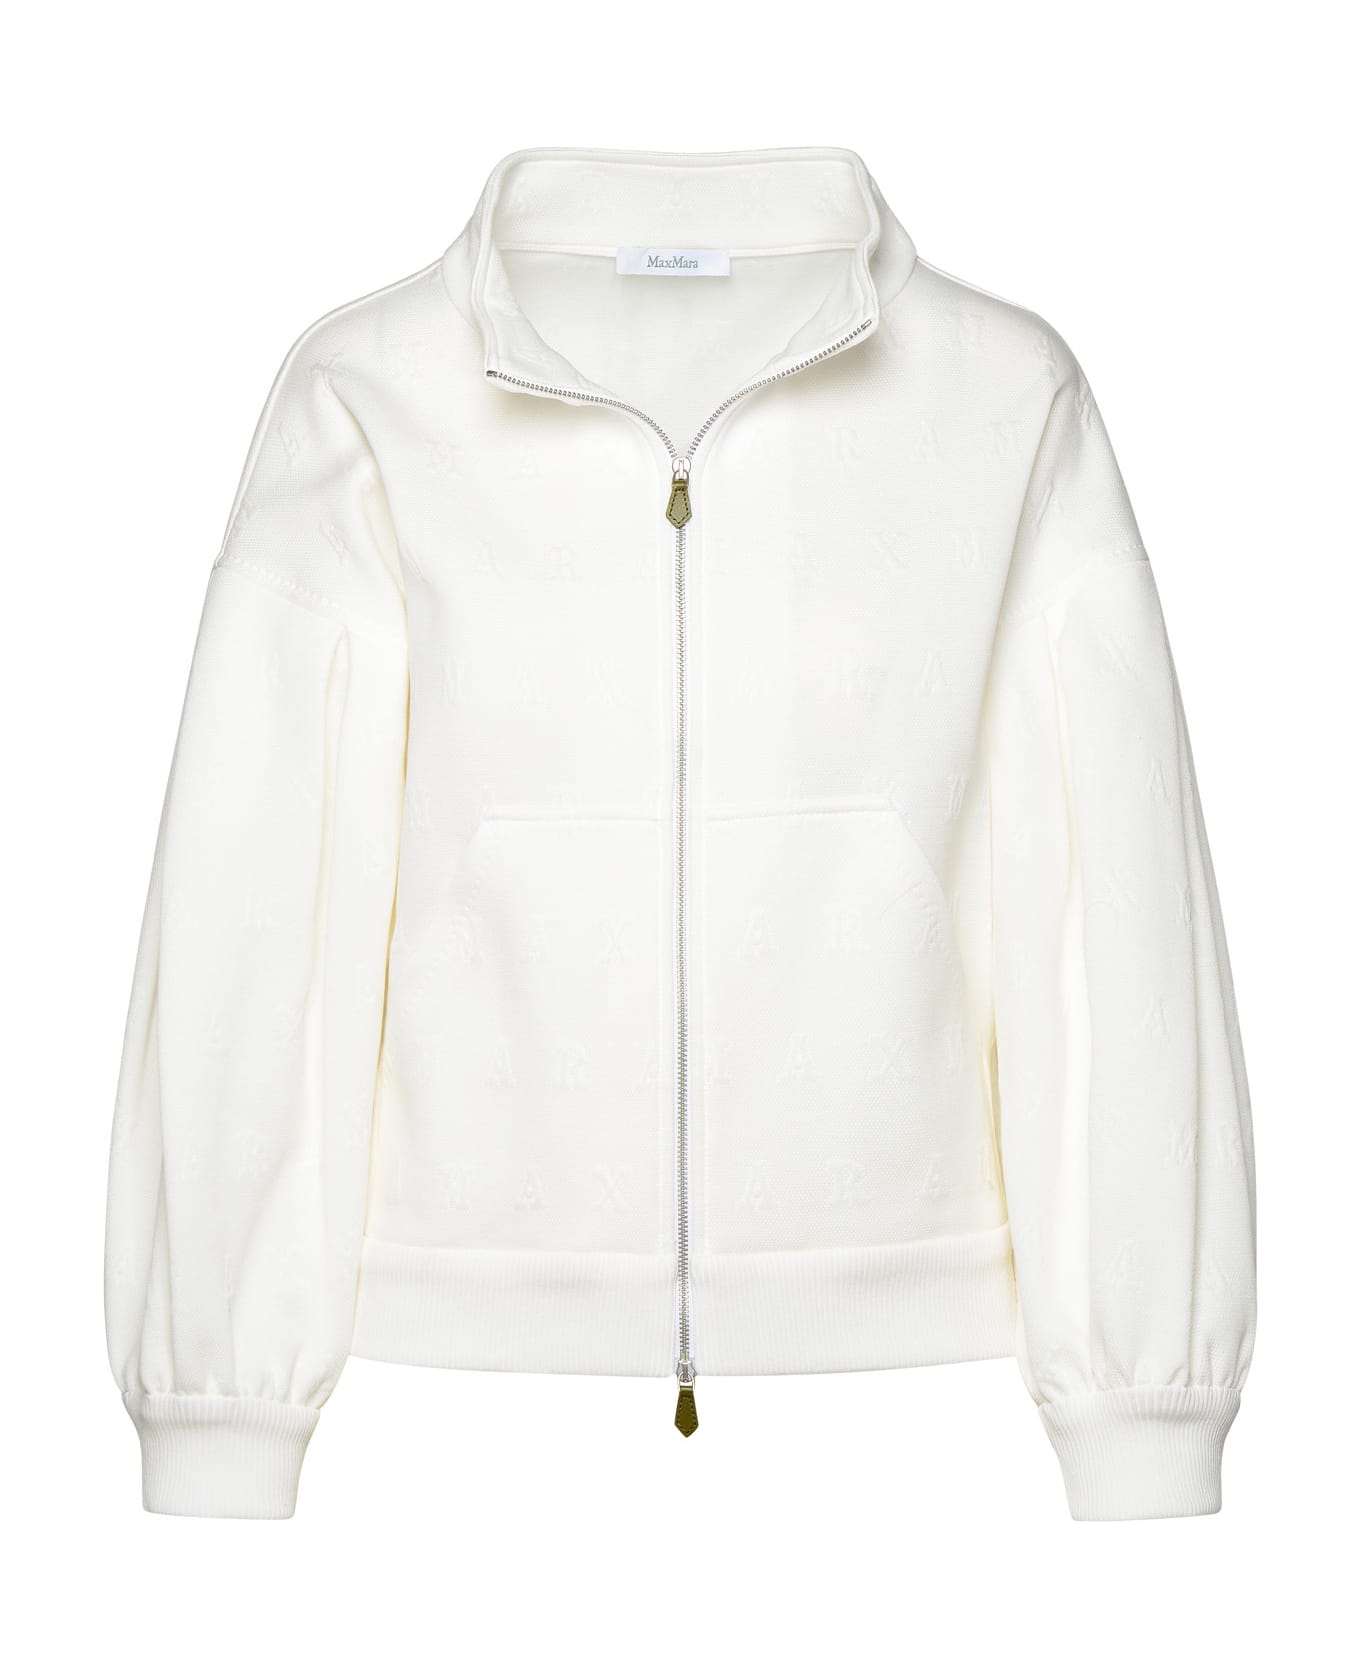 Max Mara 'gastone' Crop Jacket In White Cotton Blend - White